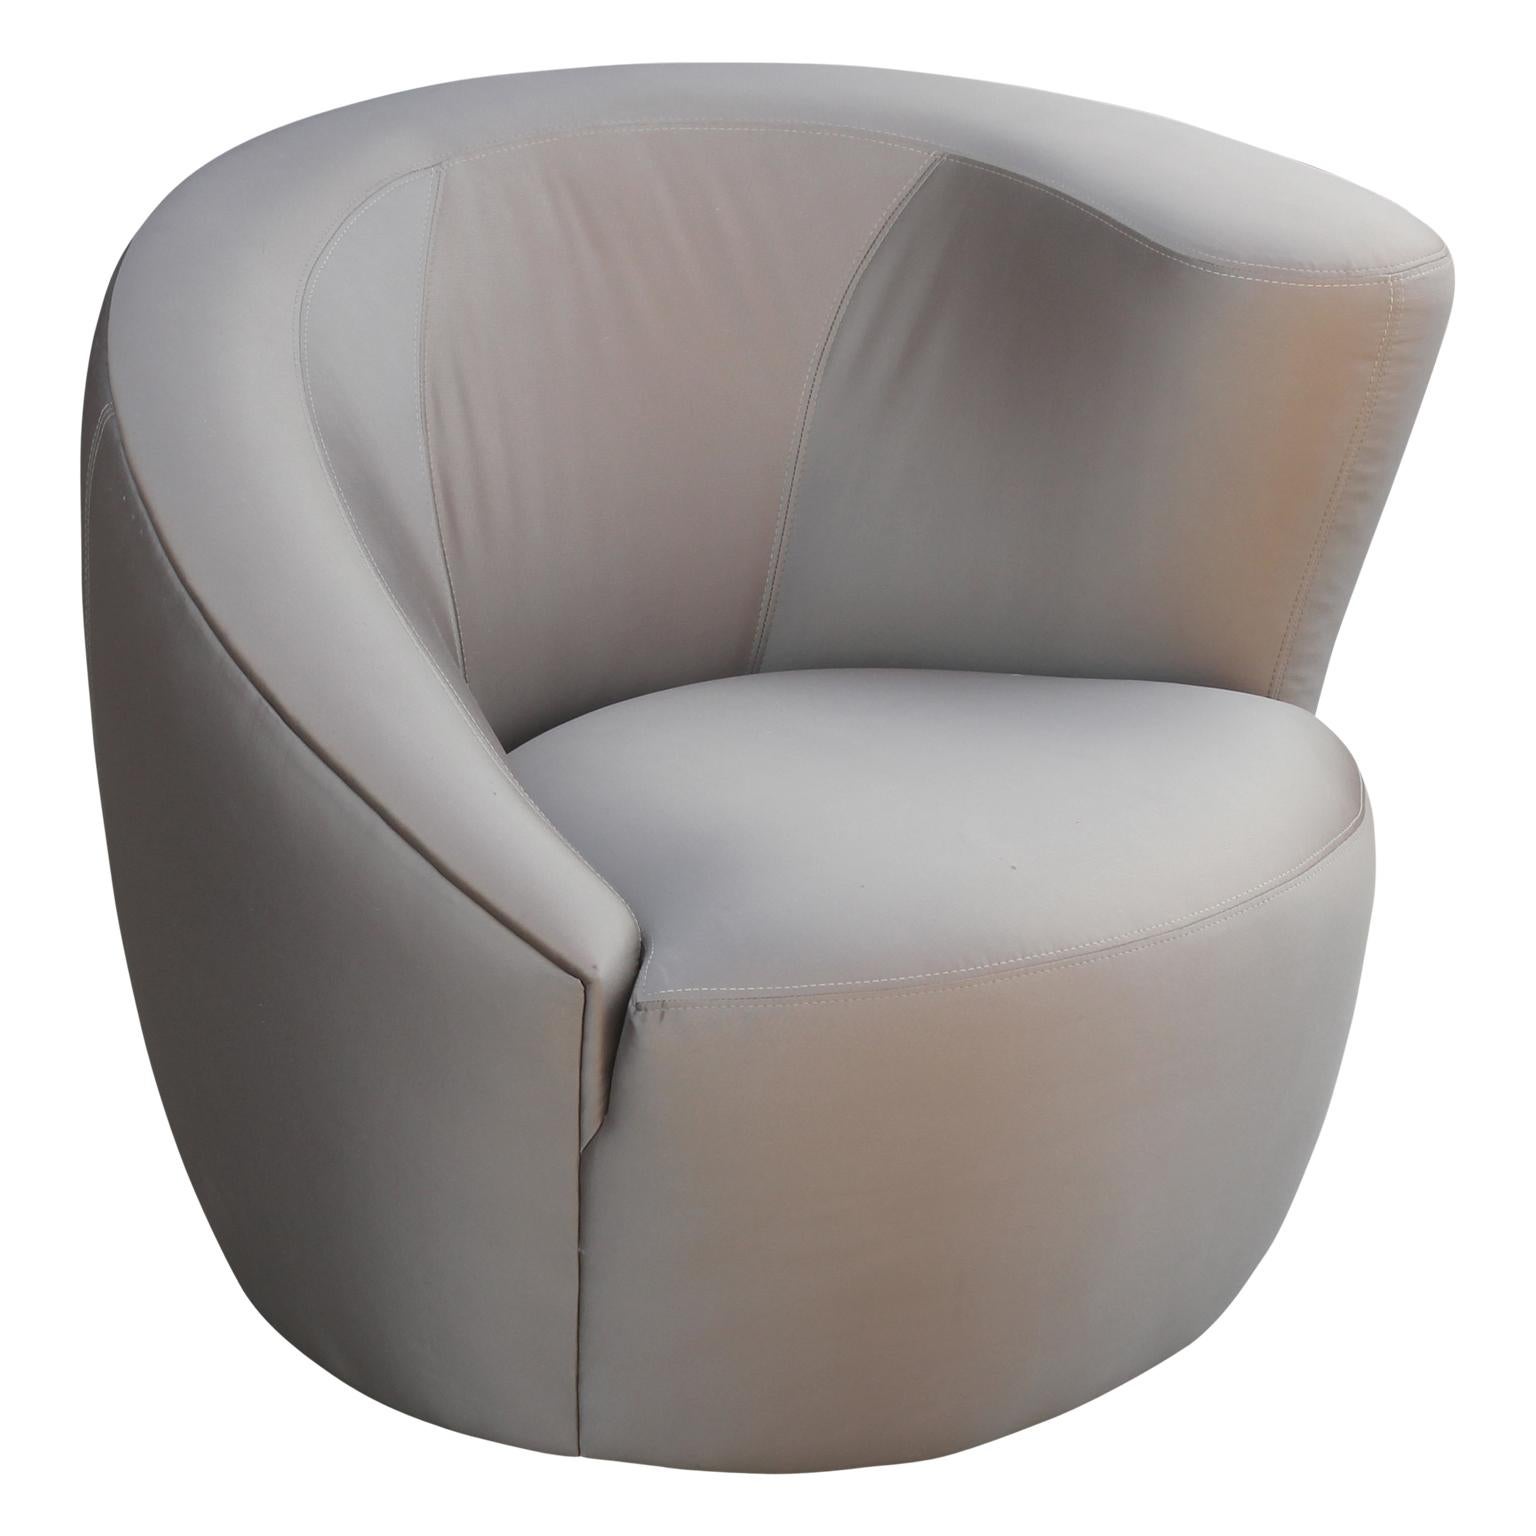 Asymmetrisches Paar drehbarer Lounge-Sessel:: entworfen von Vladimir Kagan für Weiman / Preview. Diese Stühle sind in Originalstoff und in ausgezeichnetem Zustand.